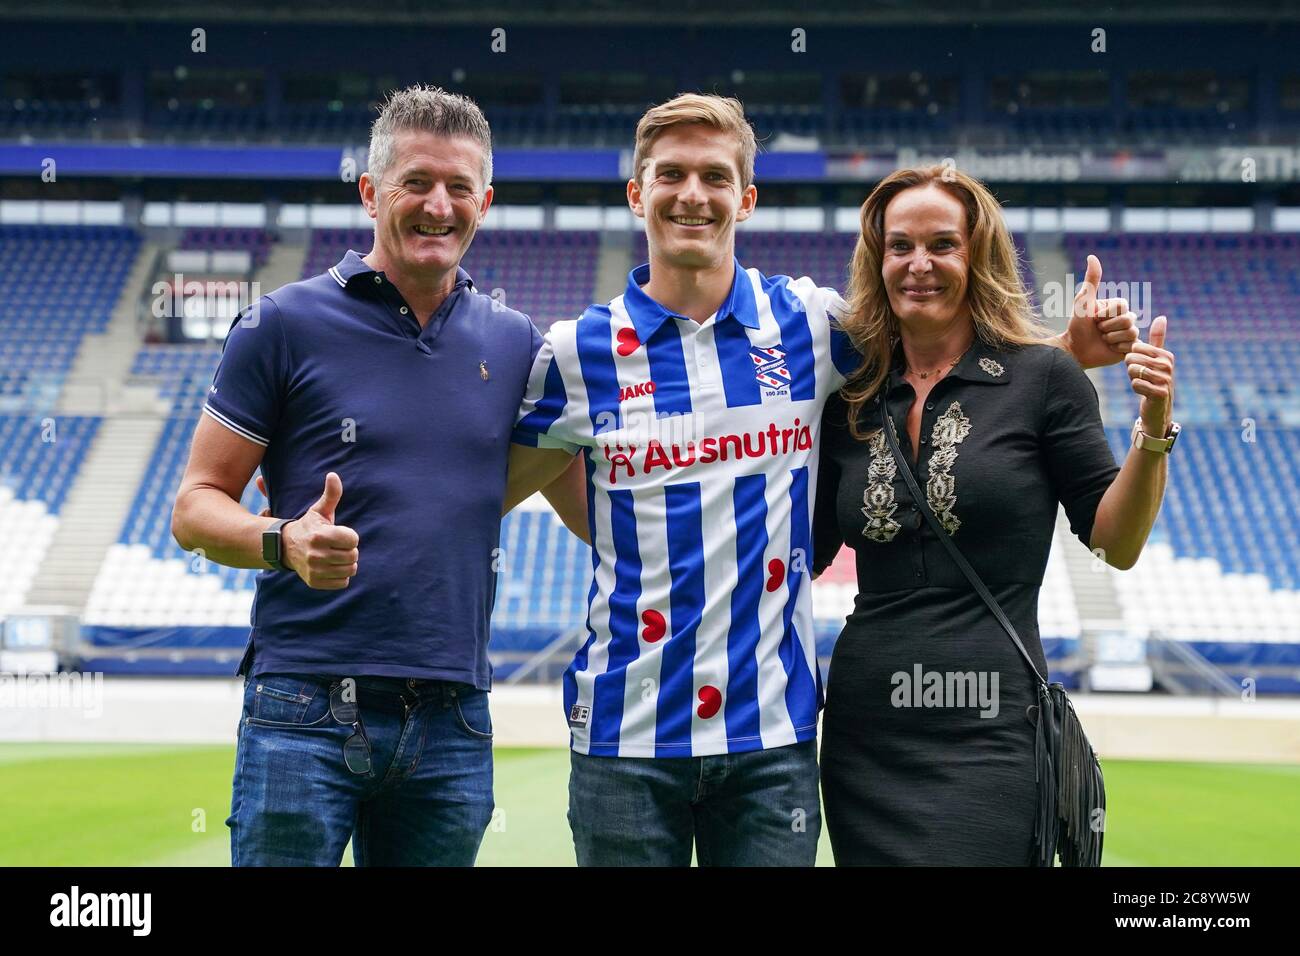 HEERENVEEN, NETHERLANDS - JULY 27: (L-R): Siebe Dewaele of SC Heerenveen and family seen after his presentation as new player of SC Heerenveen on July 27, 2020 in Heerenveen, The Netherlands. Stock Photo